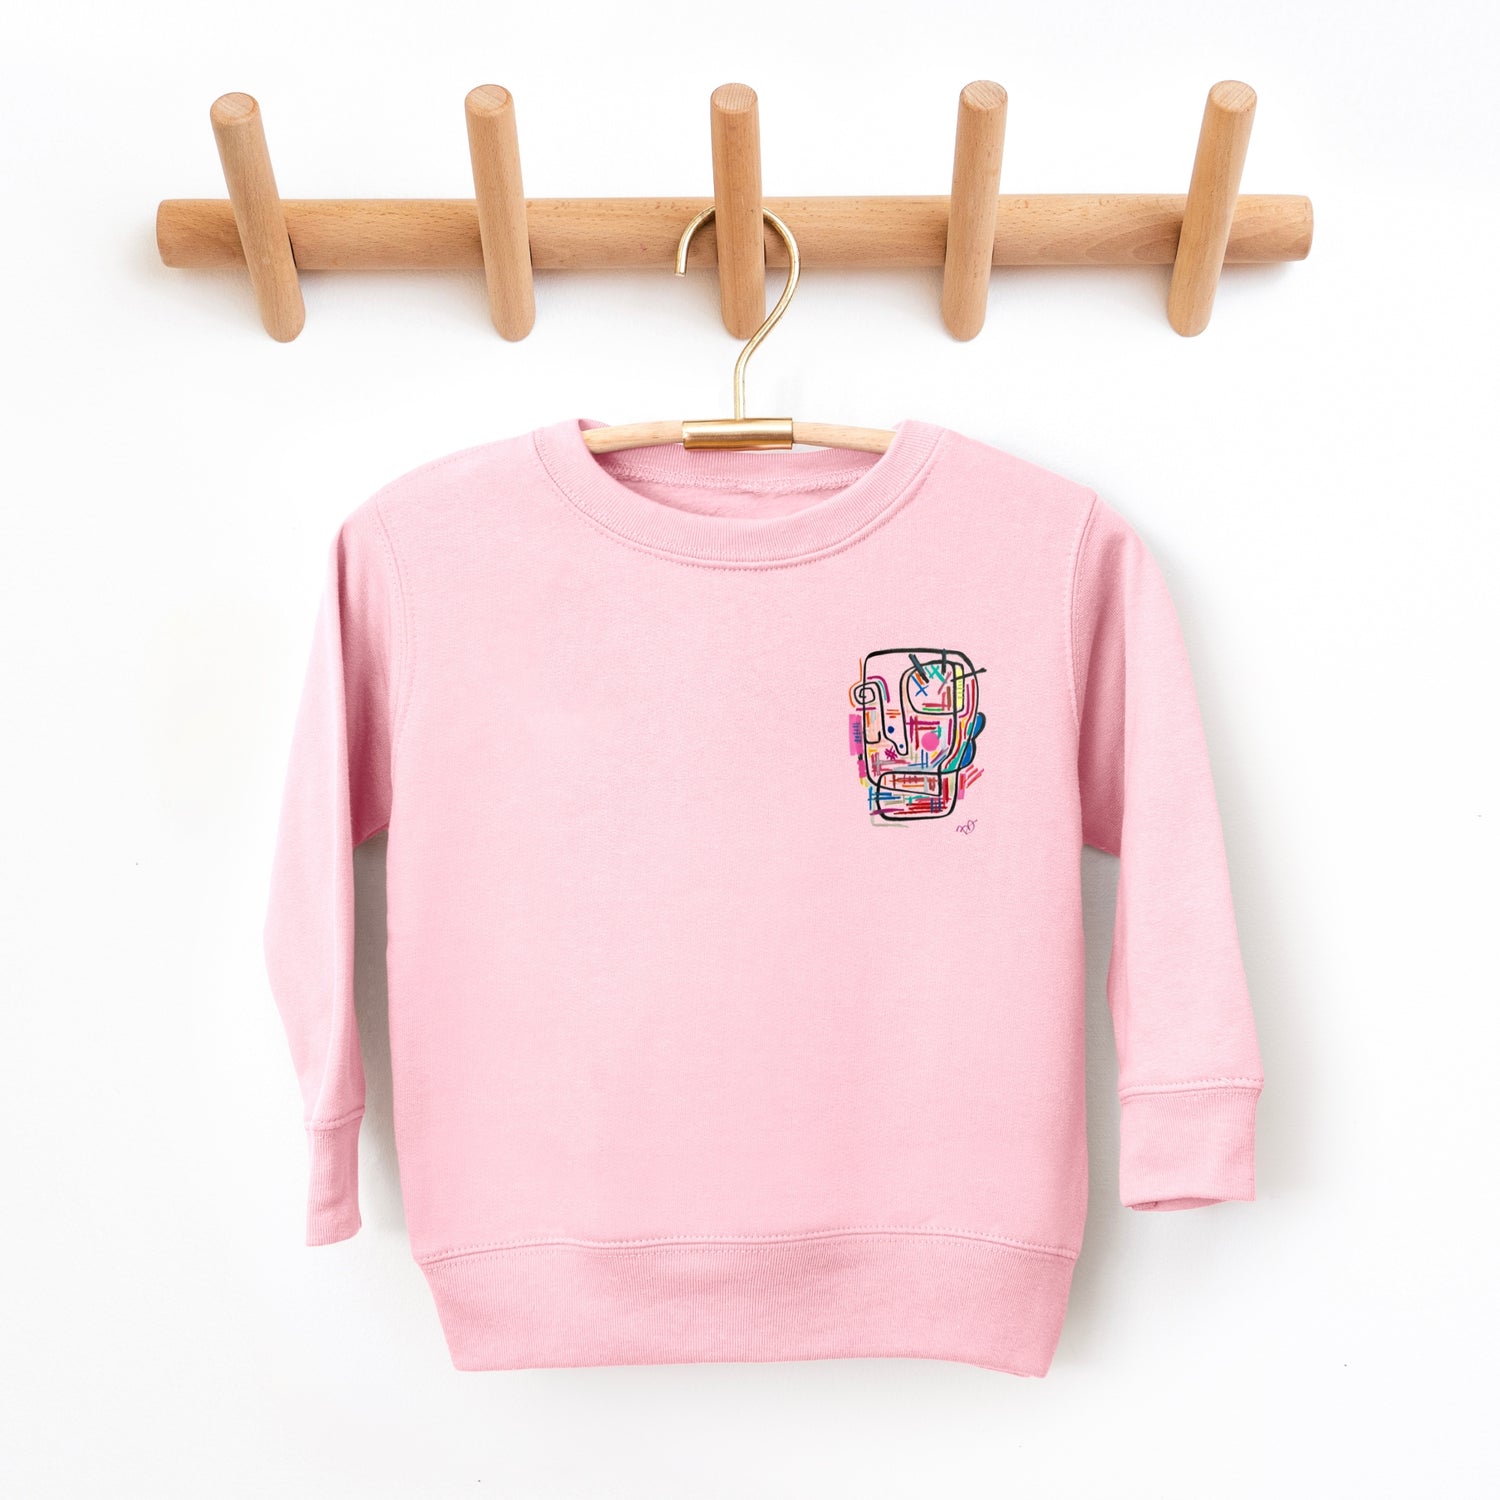 UNIQUE children's sweater unisex pink art work by SKINS LA 